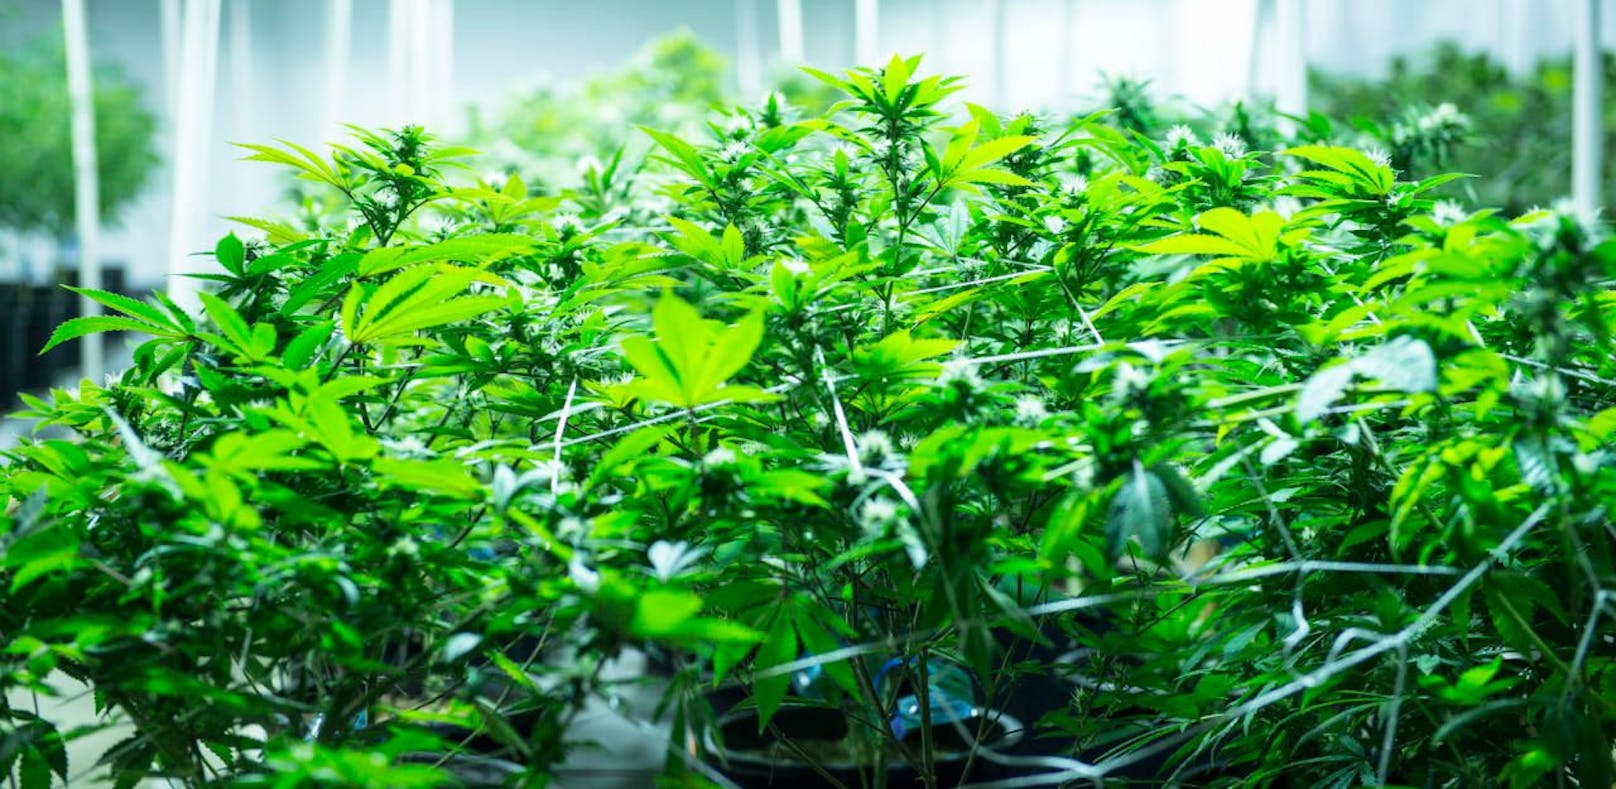 In Griechenland stieß die Polizei auf eine Cannabis-Plantage, auf der 13.000 Pflanzen gezüchtet wurden. 